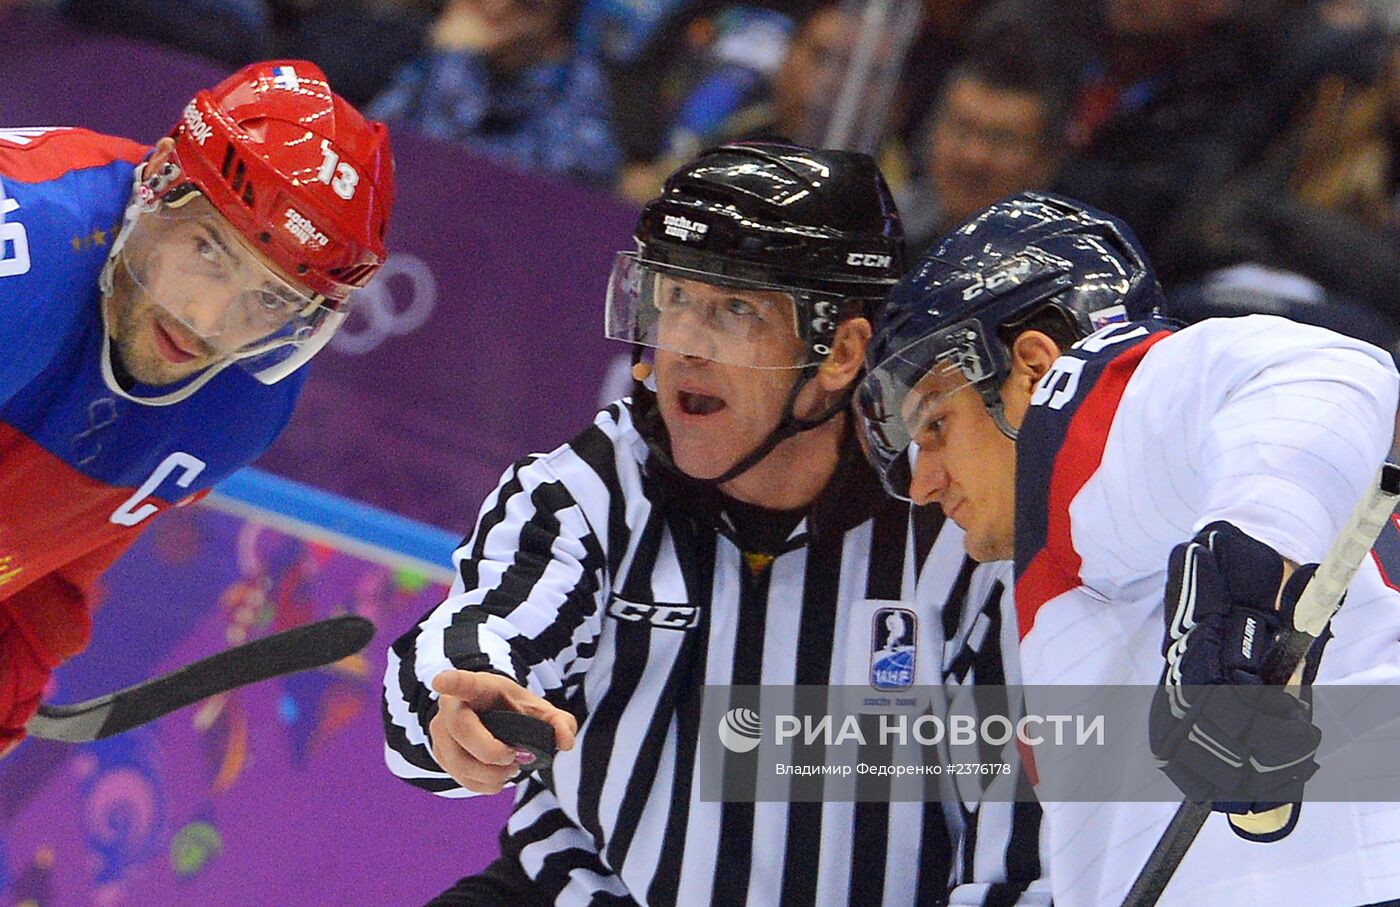 Олимпиада 2014. Хоккей. Мужчины. Россия - Словакия